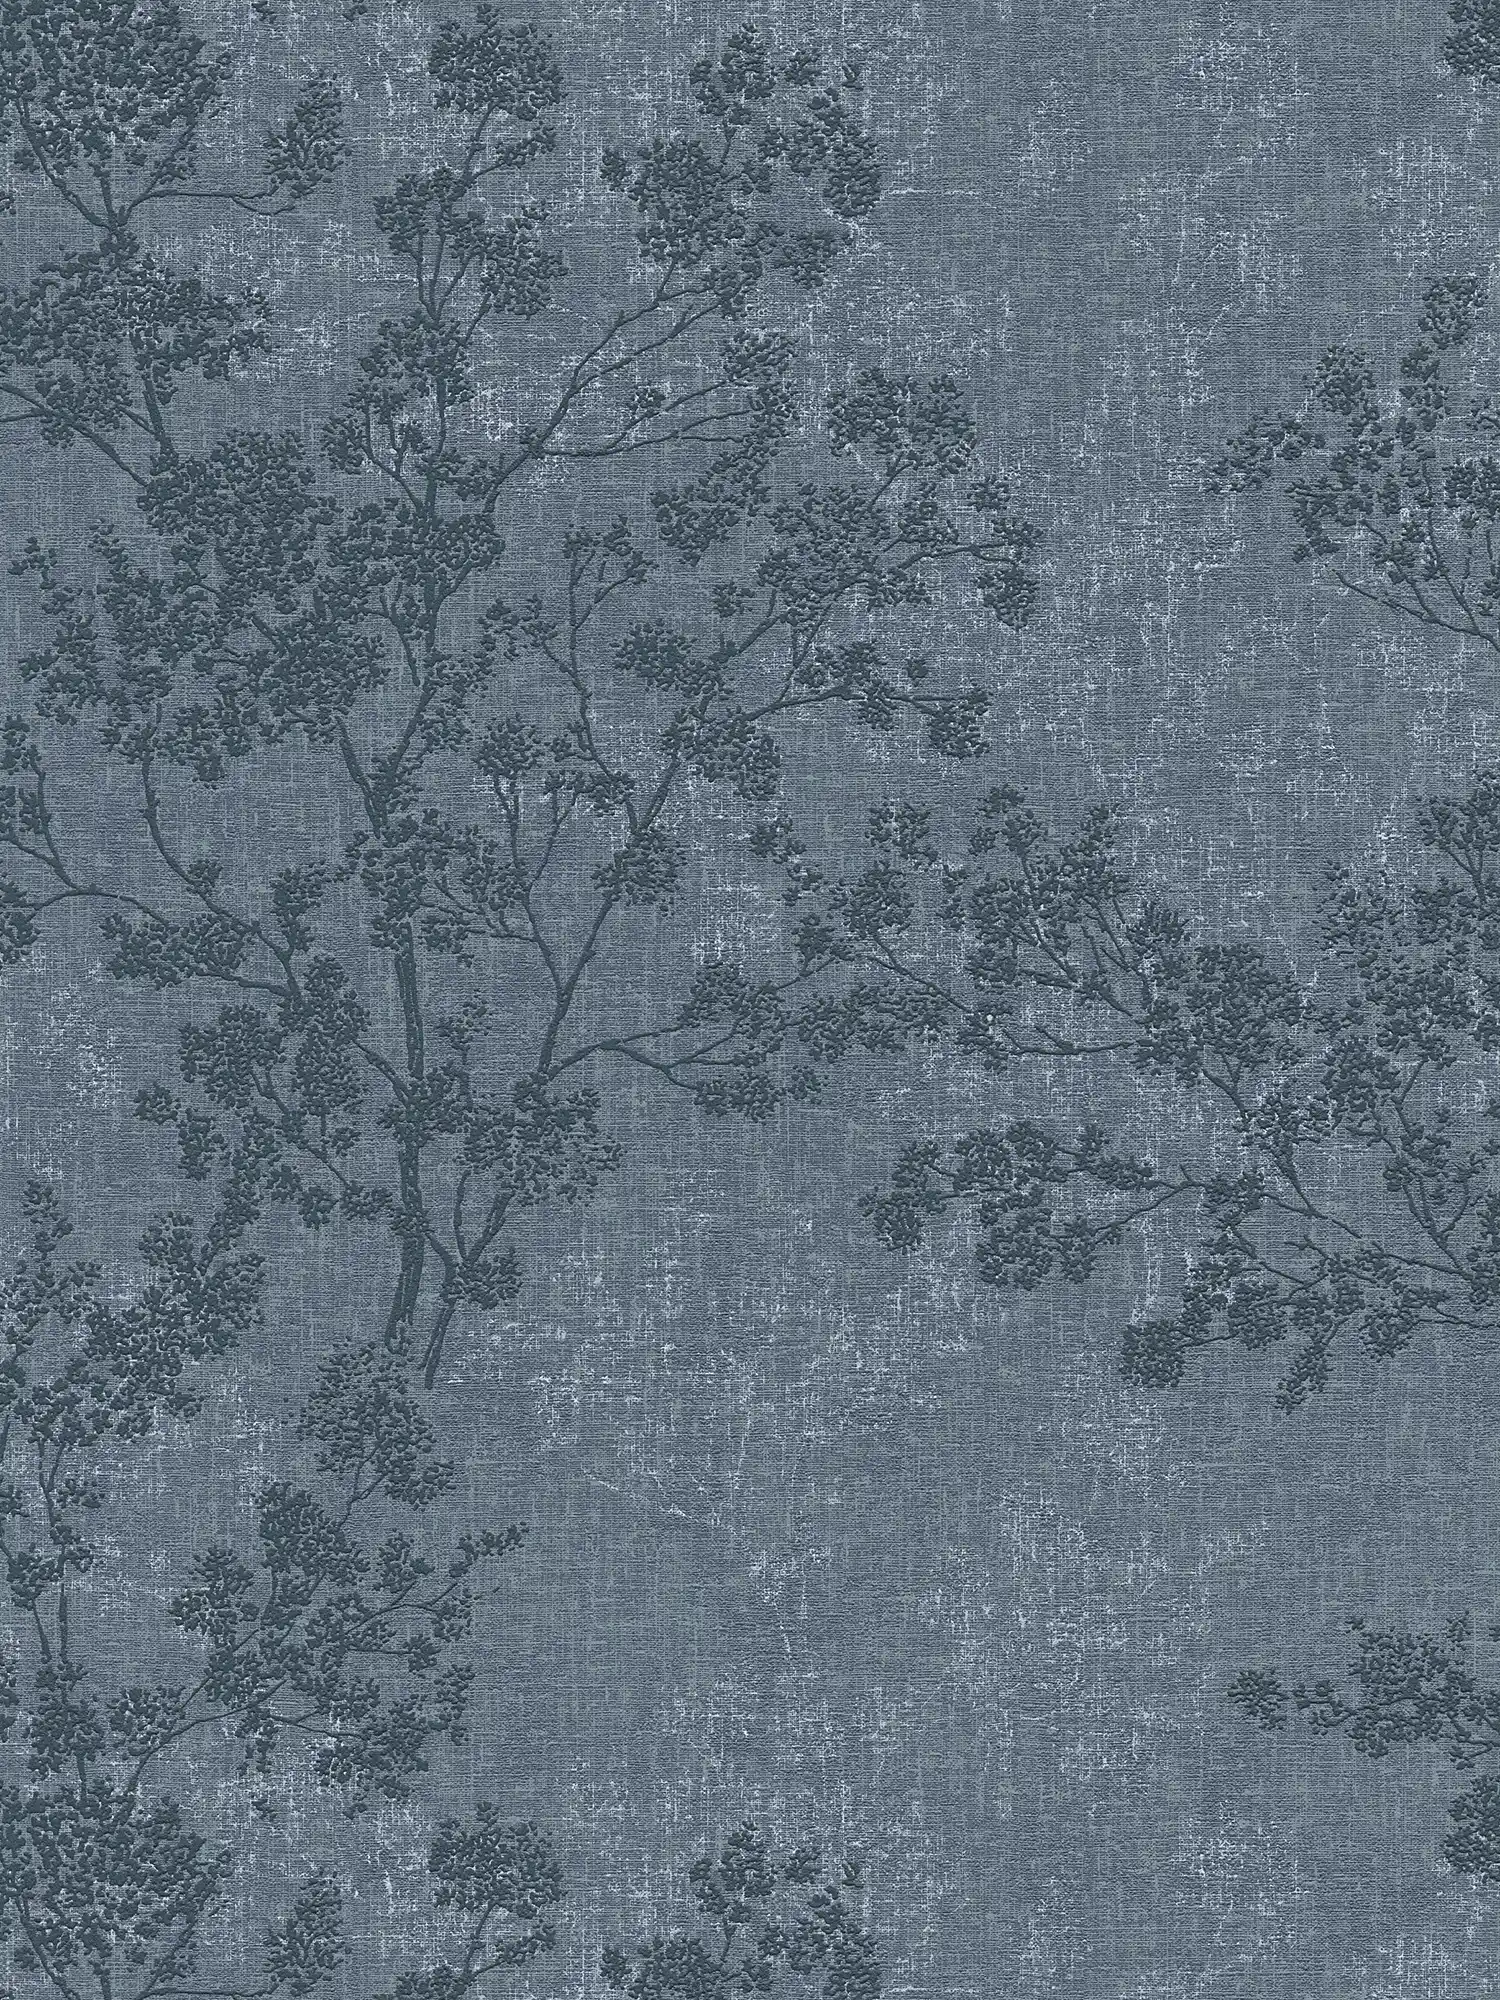 wallpaper leaves pattern in linen look - blue
